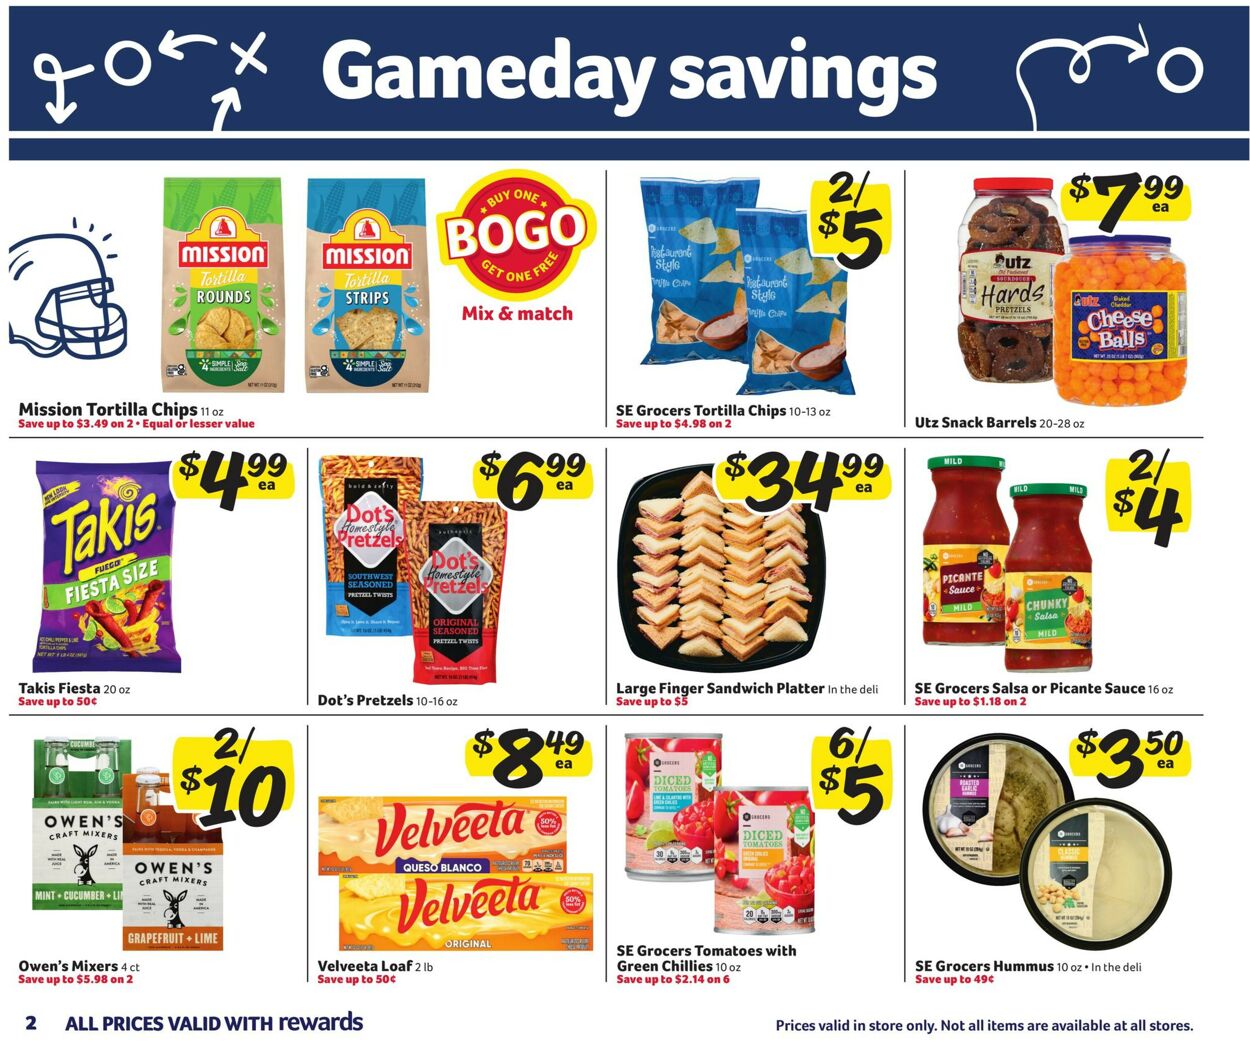 Catalogue Harveys Supermarket from 01/25/2023